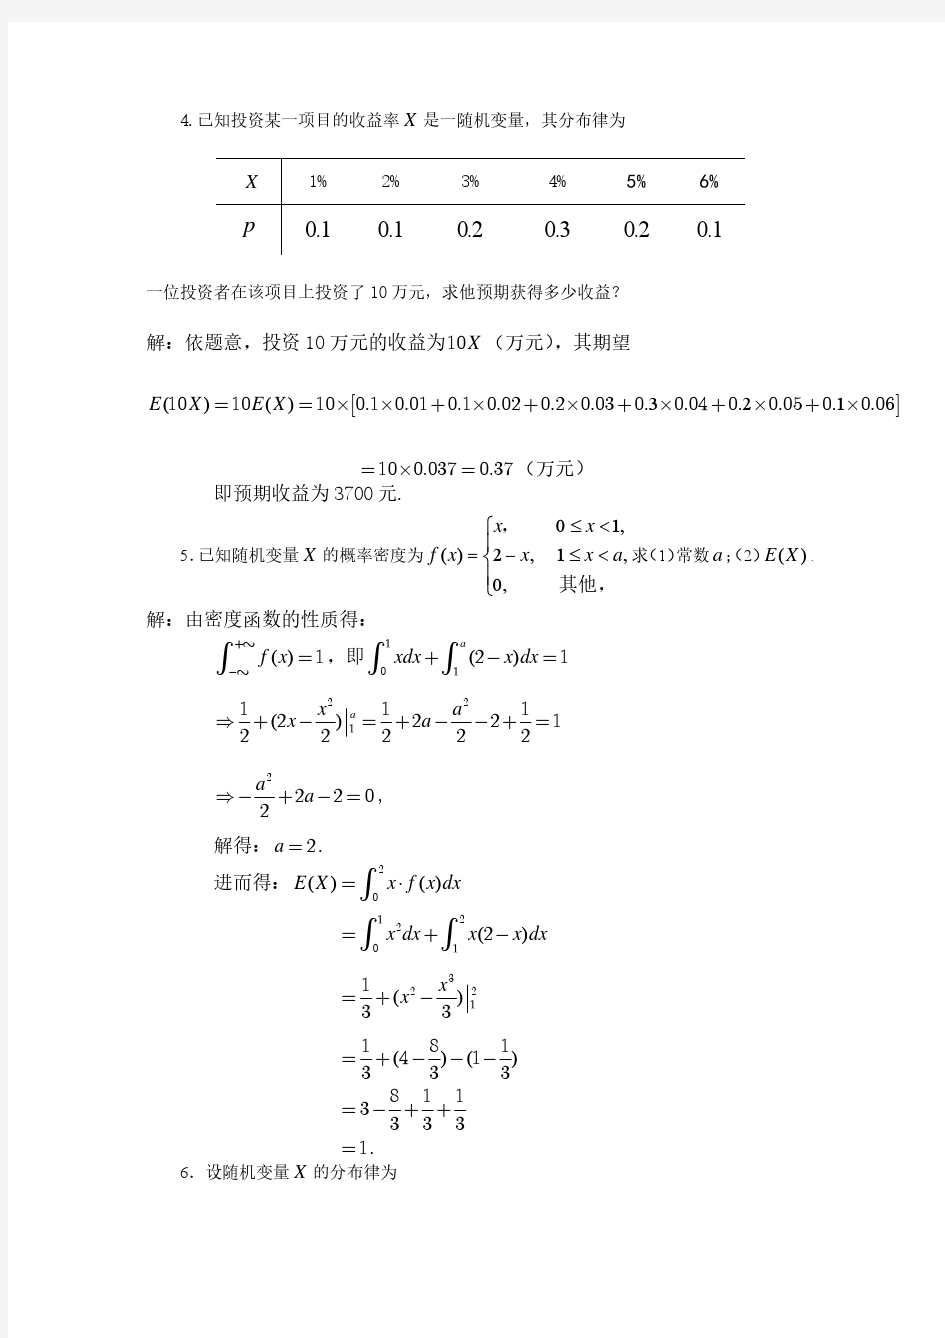 概率论与数理统计(海南大学)第四章习题详解